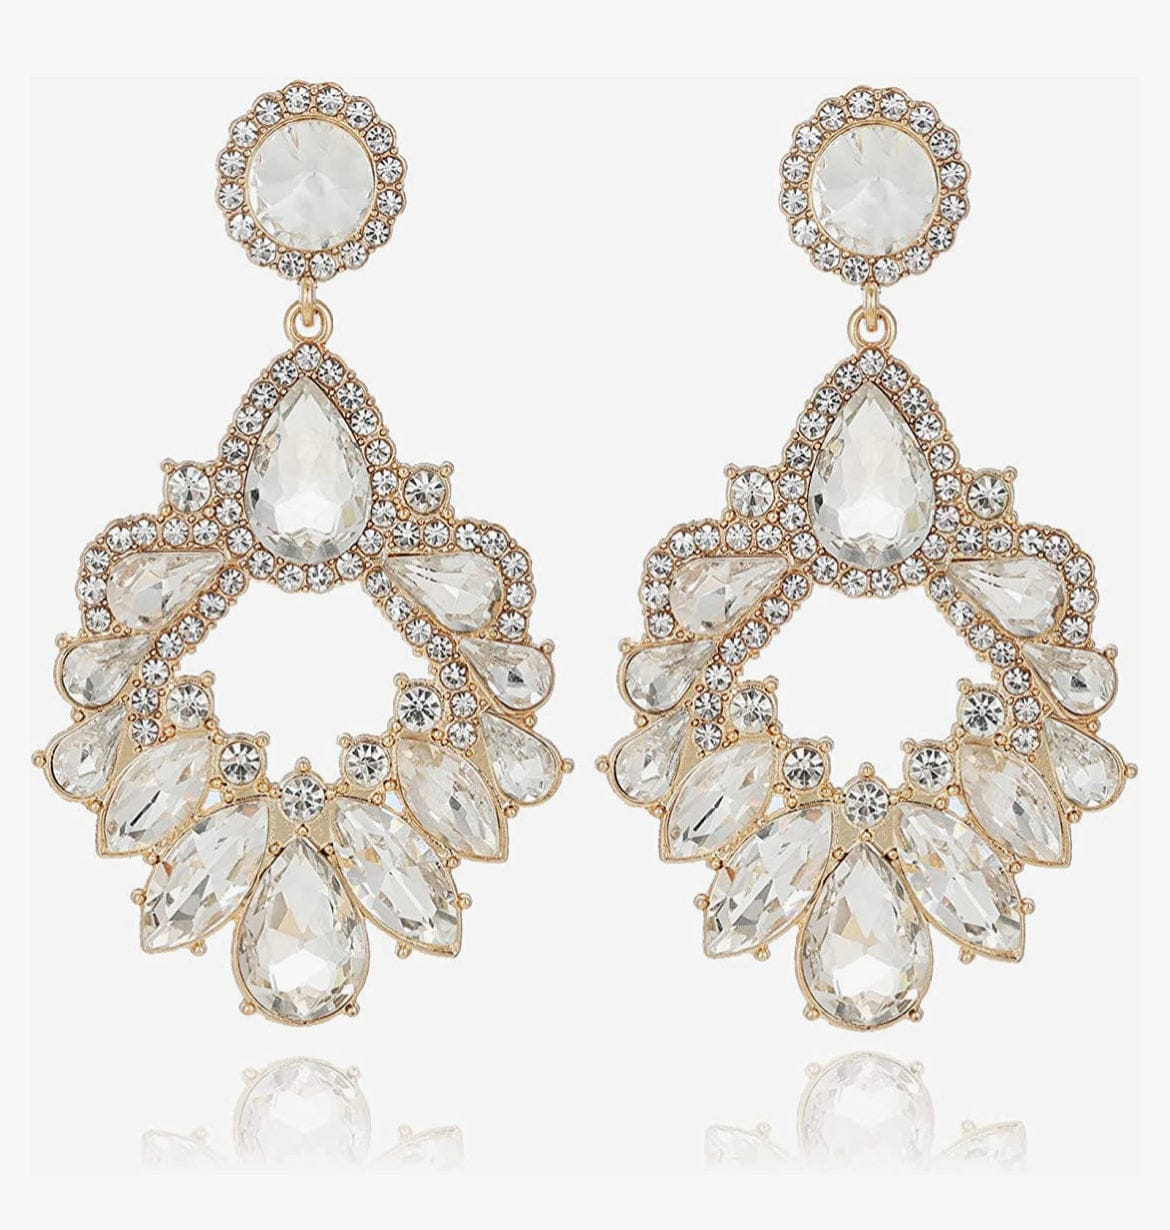 Clear jeweled earrings